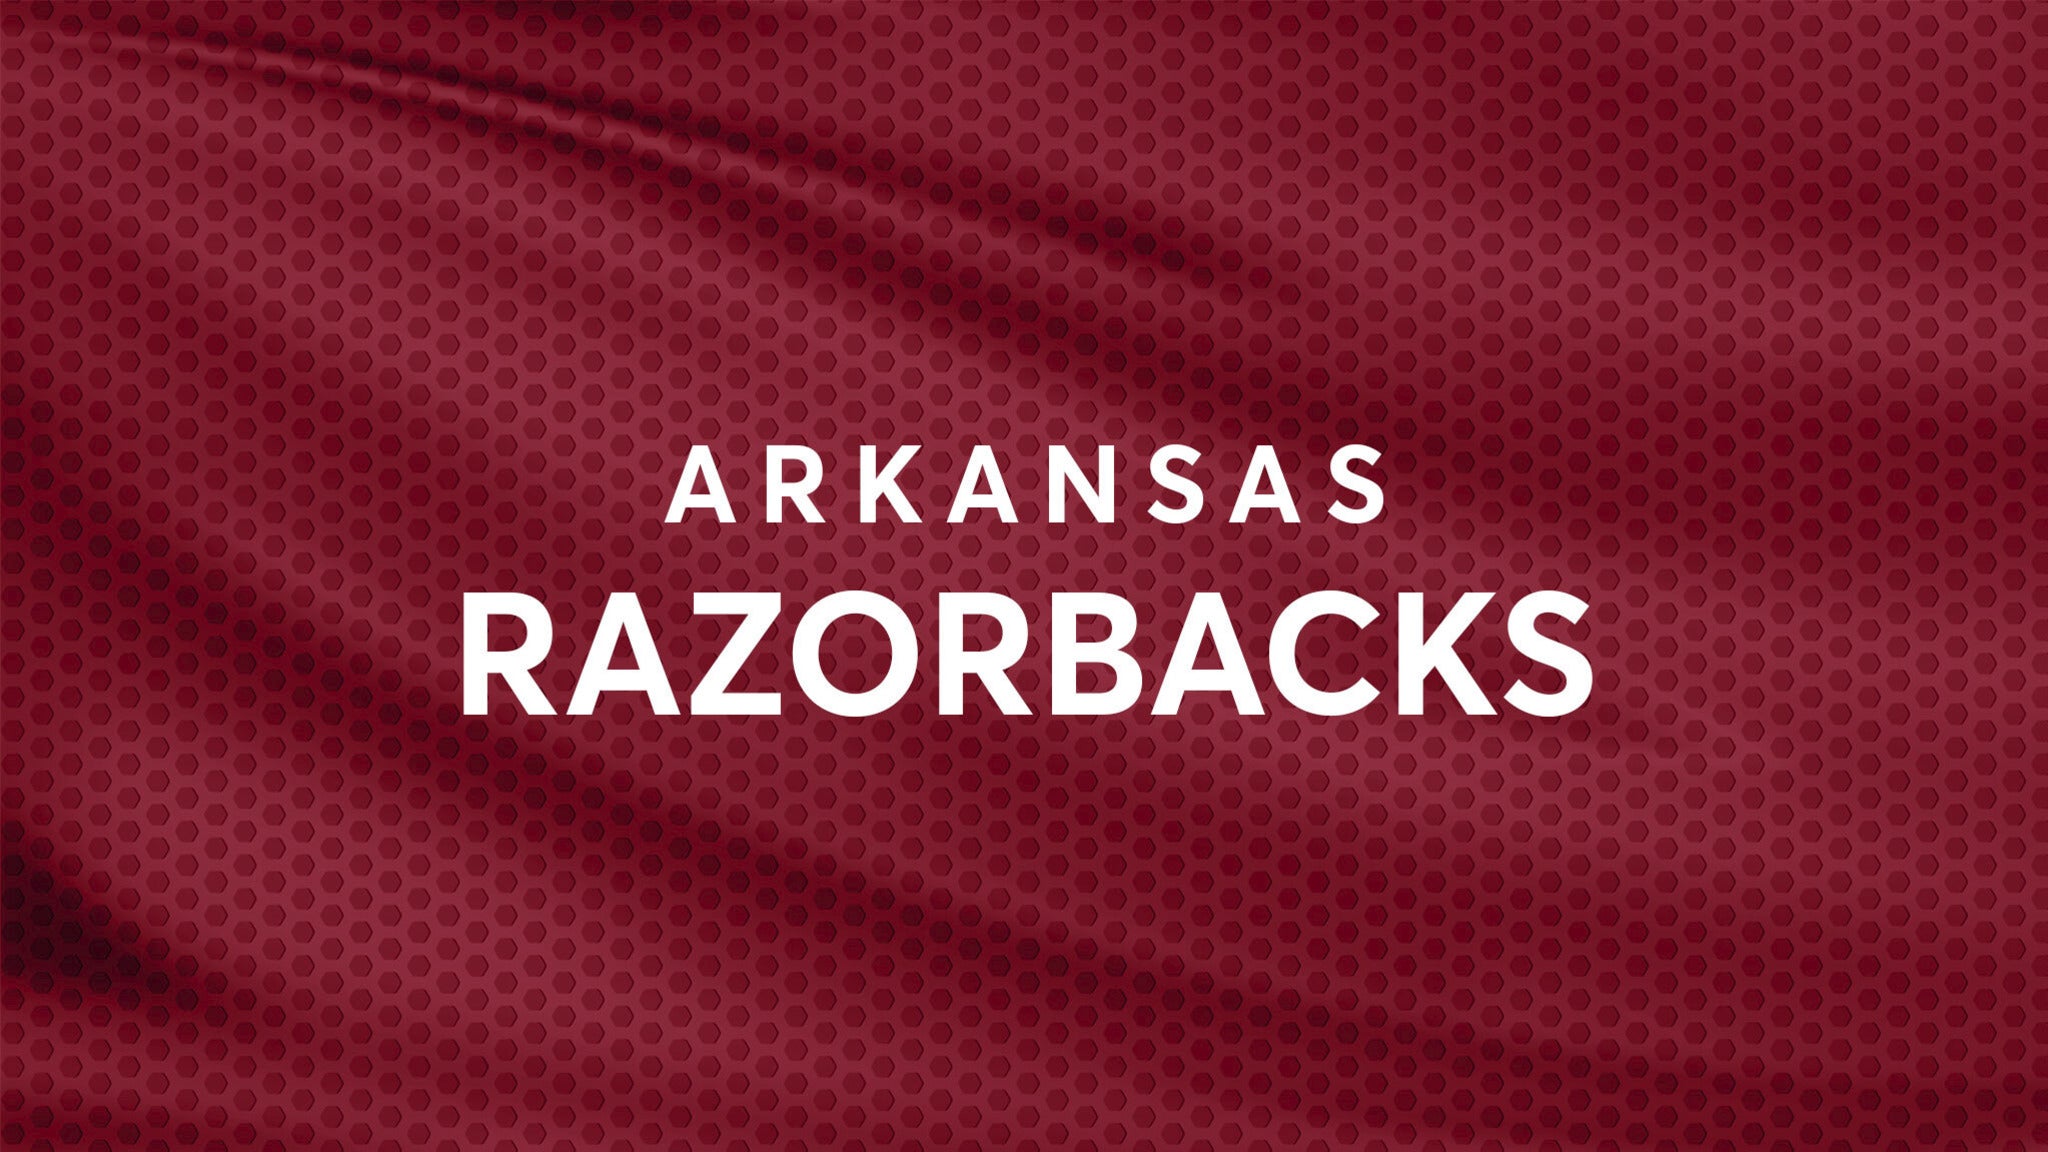 Arkansas Razorbacks Baseball vs. Ole Miss Rebels Baseball